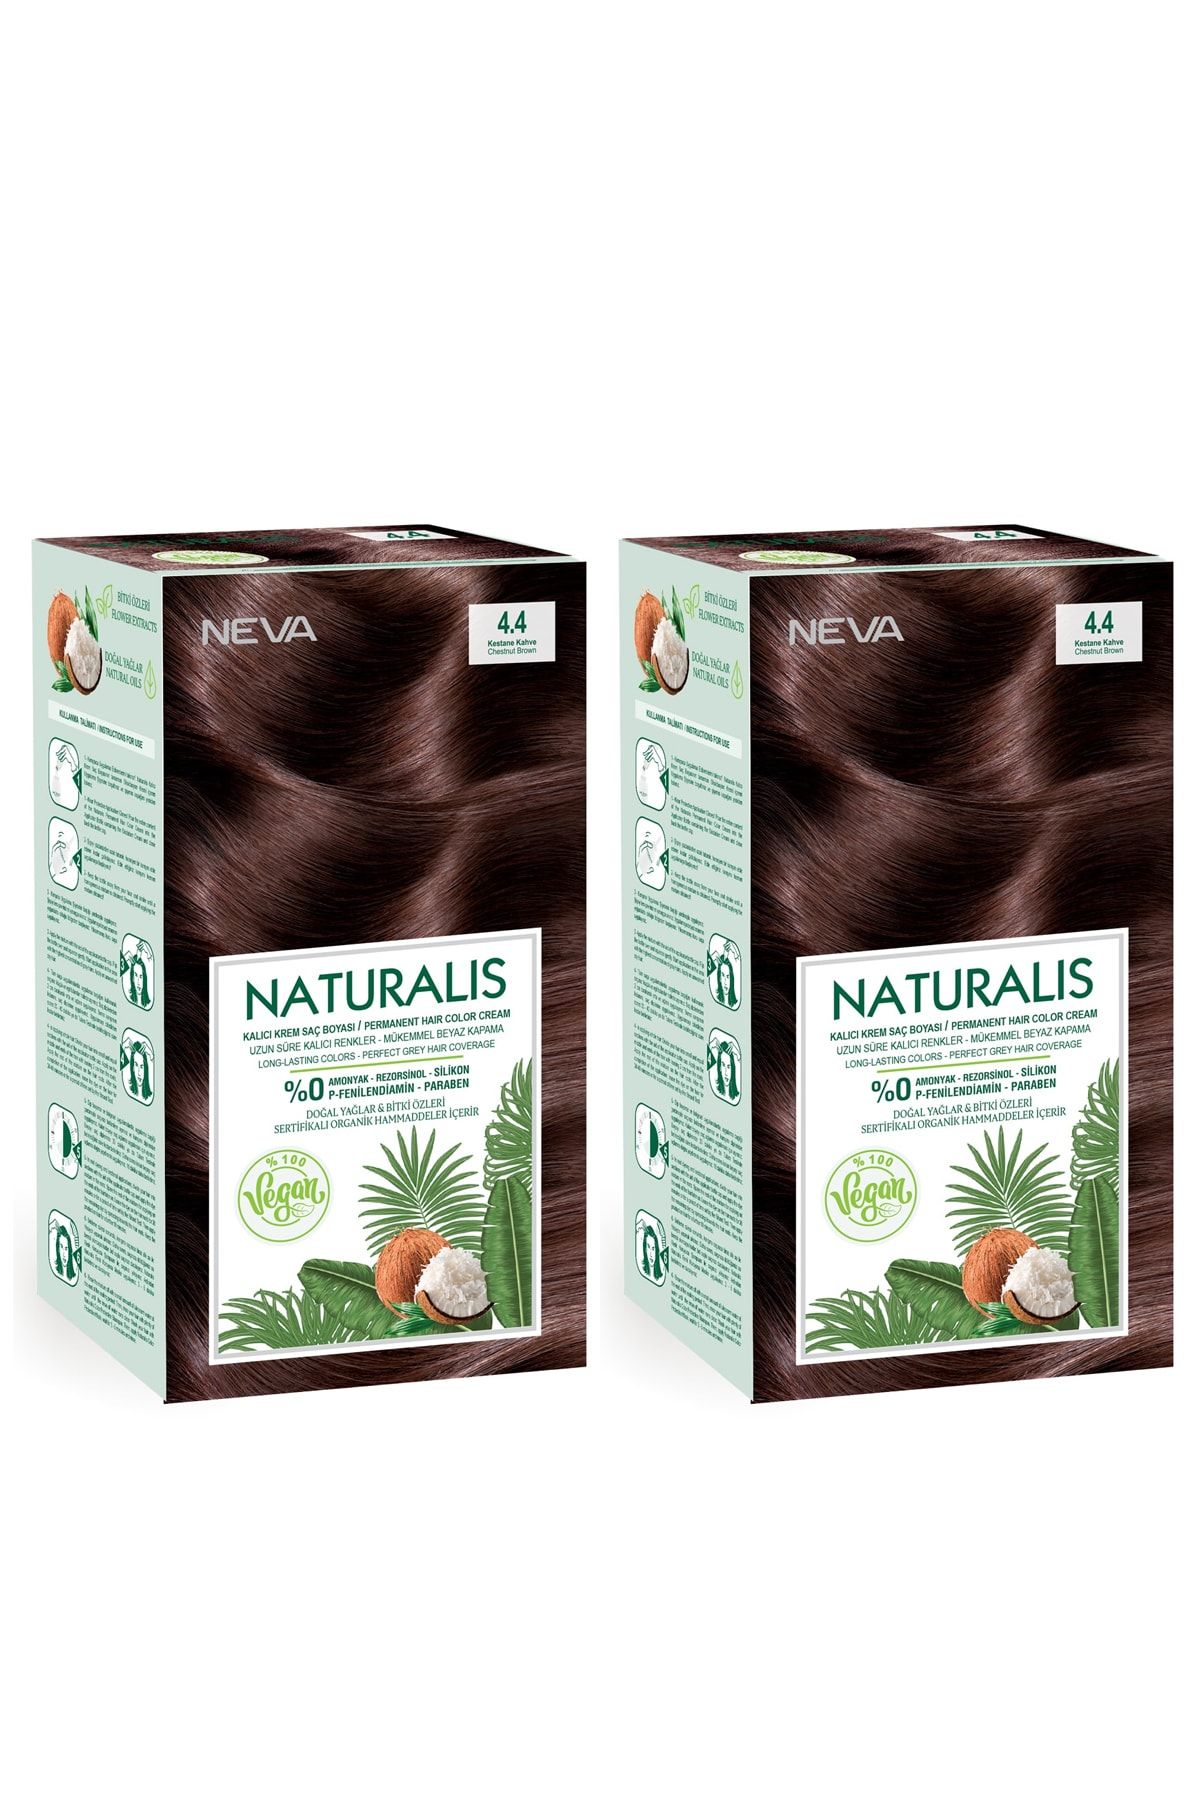 NEVA KOZMETİK Naturalis Saç Boyası 4.4 Kestane Kahve %100 Vegan 2'li Set